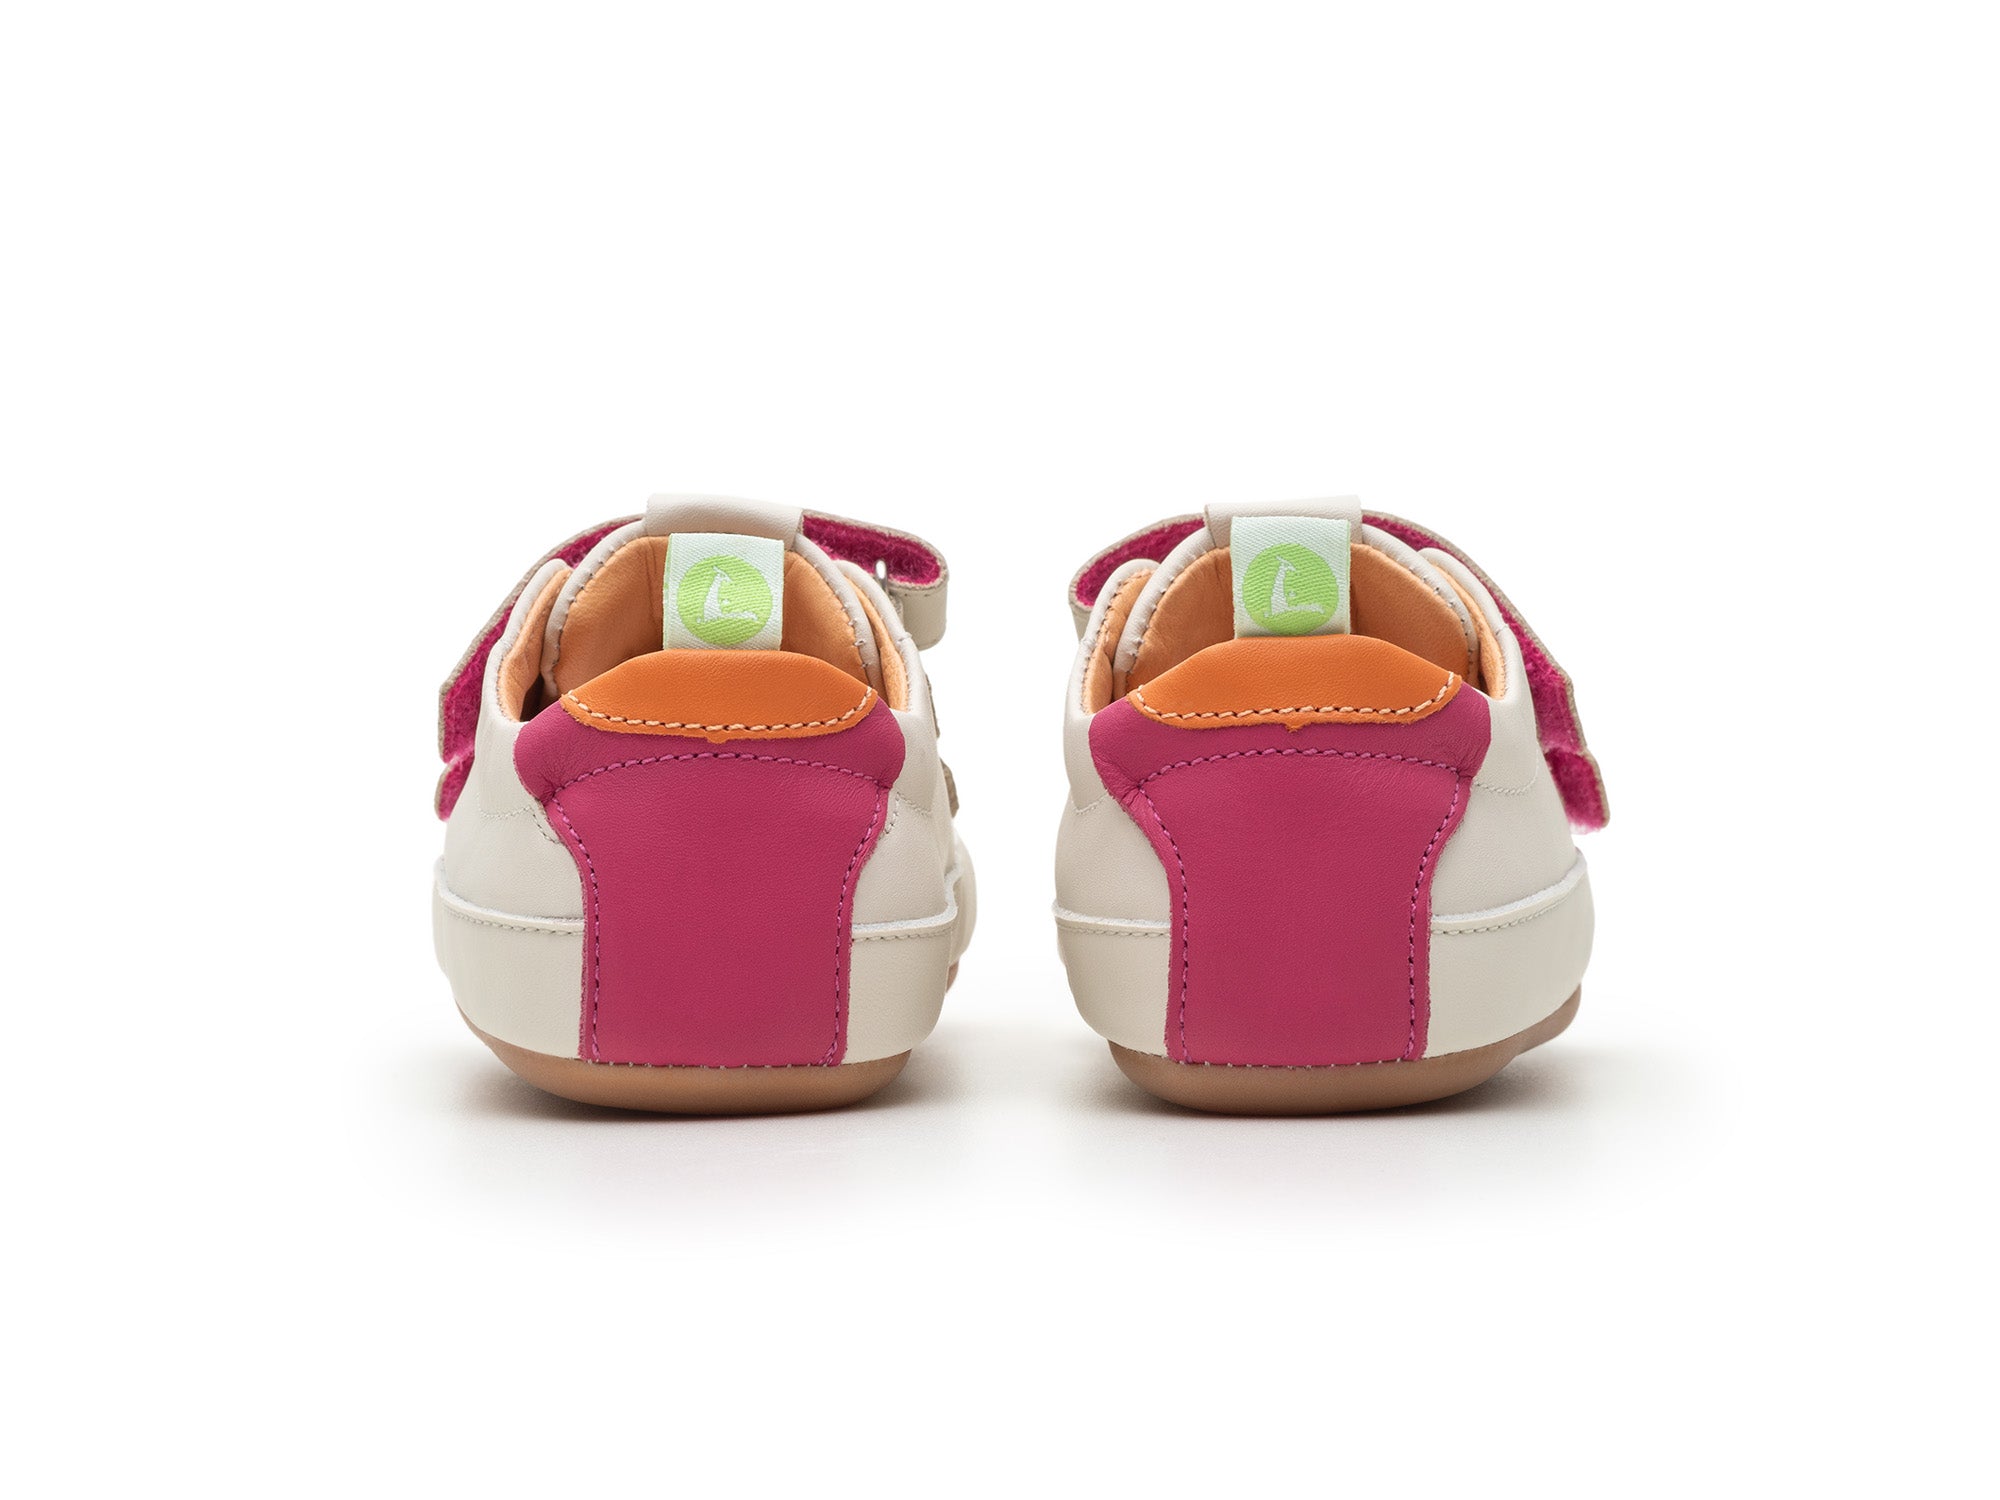 Tip Toey Joey Toddler Sneaker Bossy Play - Tapioca/Tangerine/Pitaya Pink